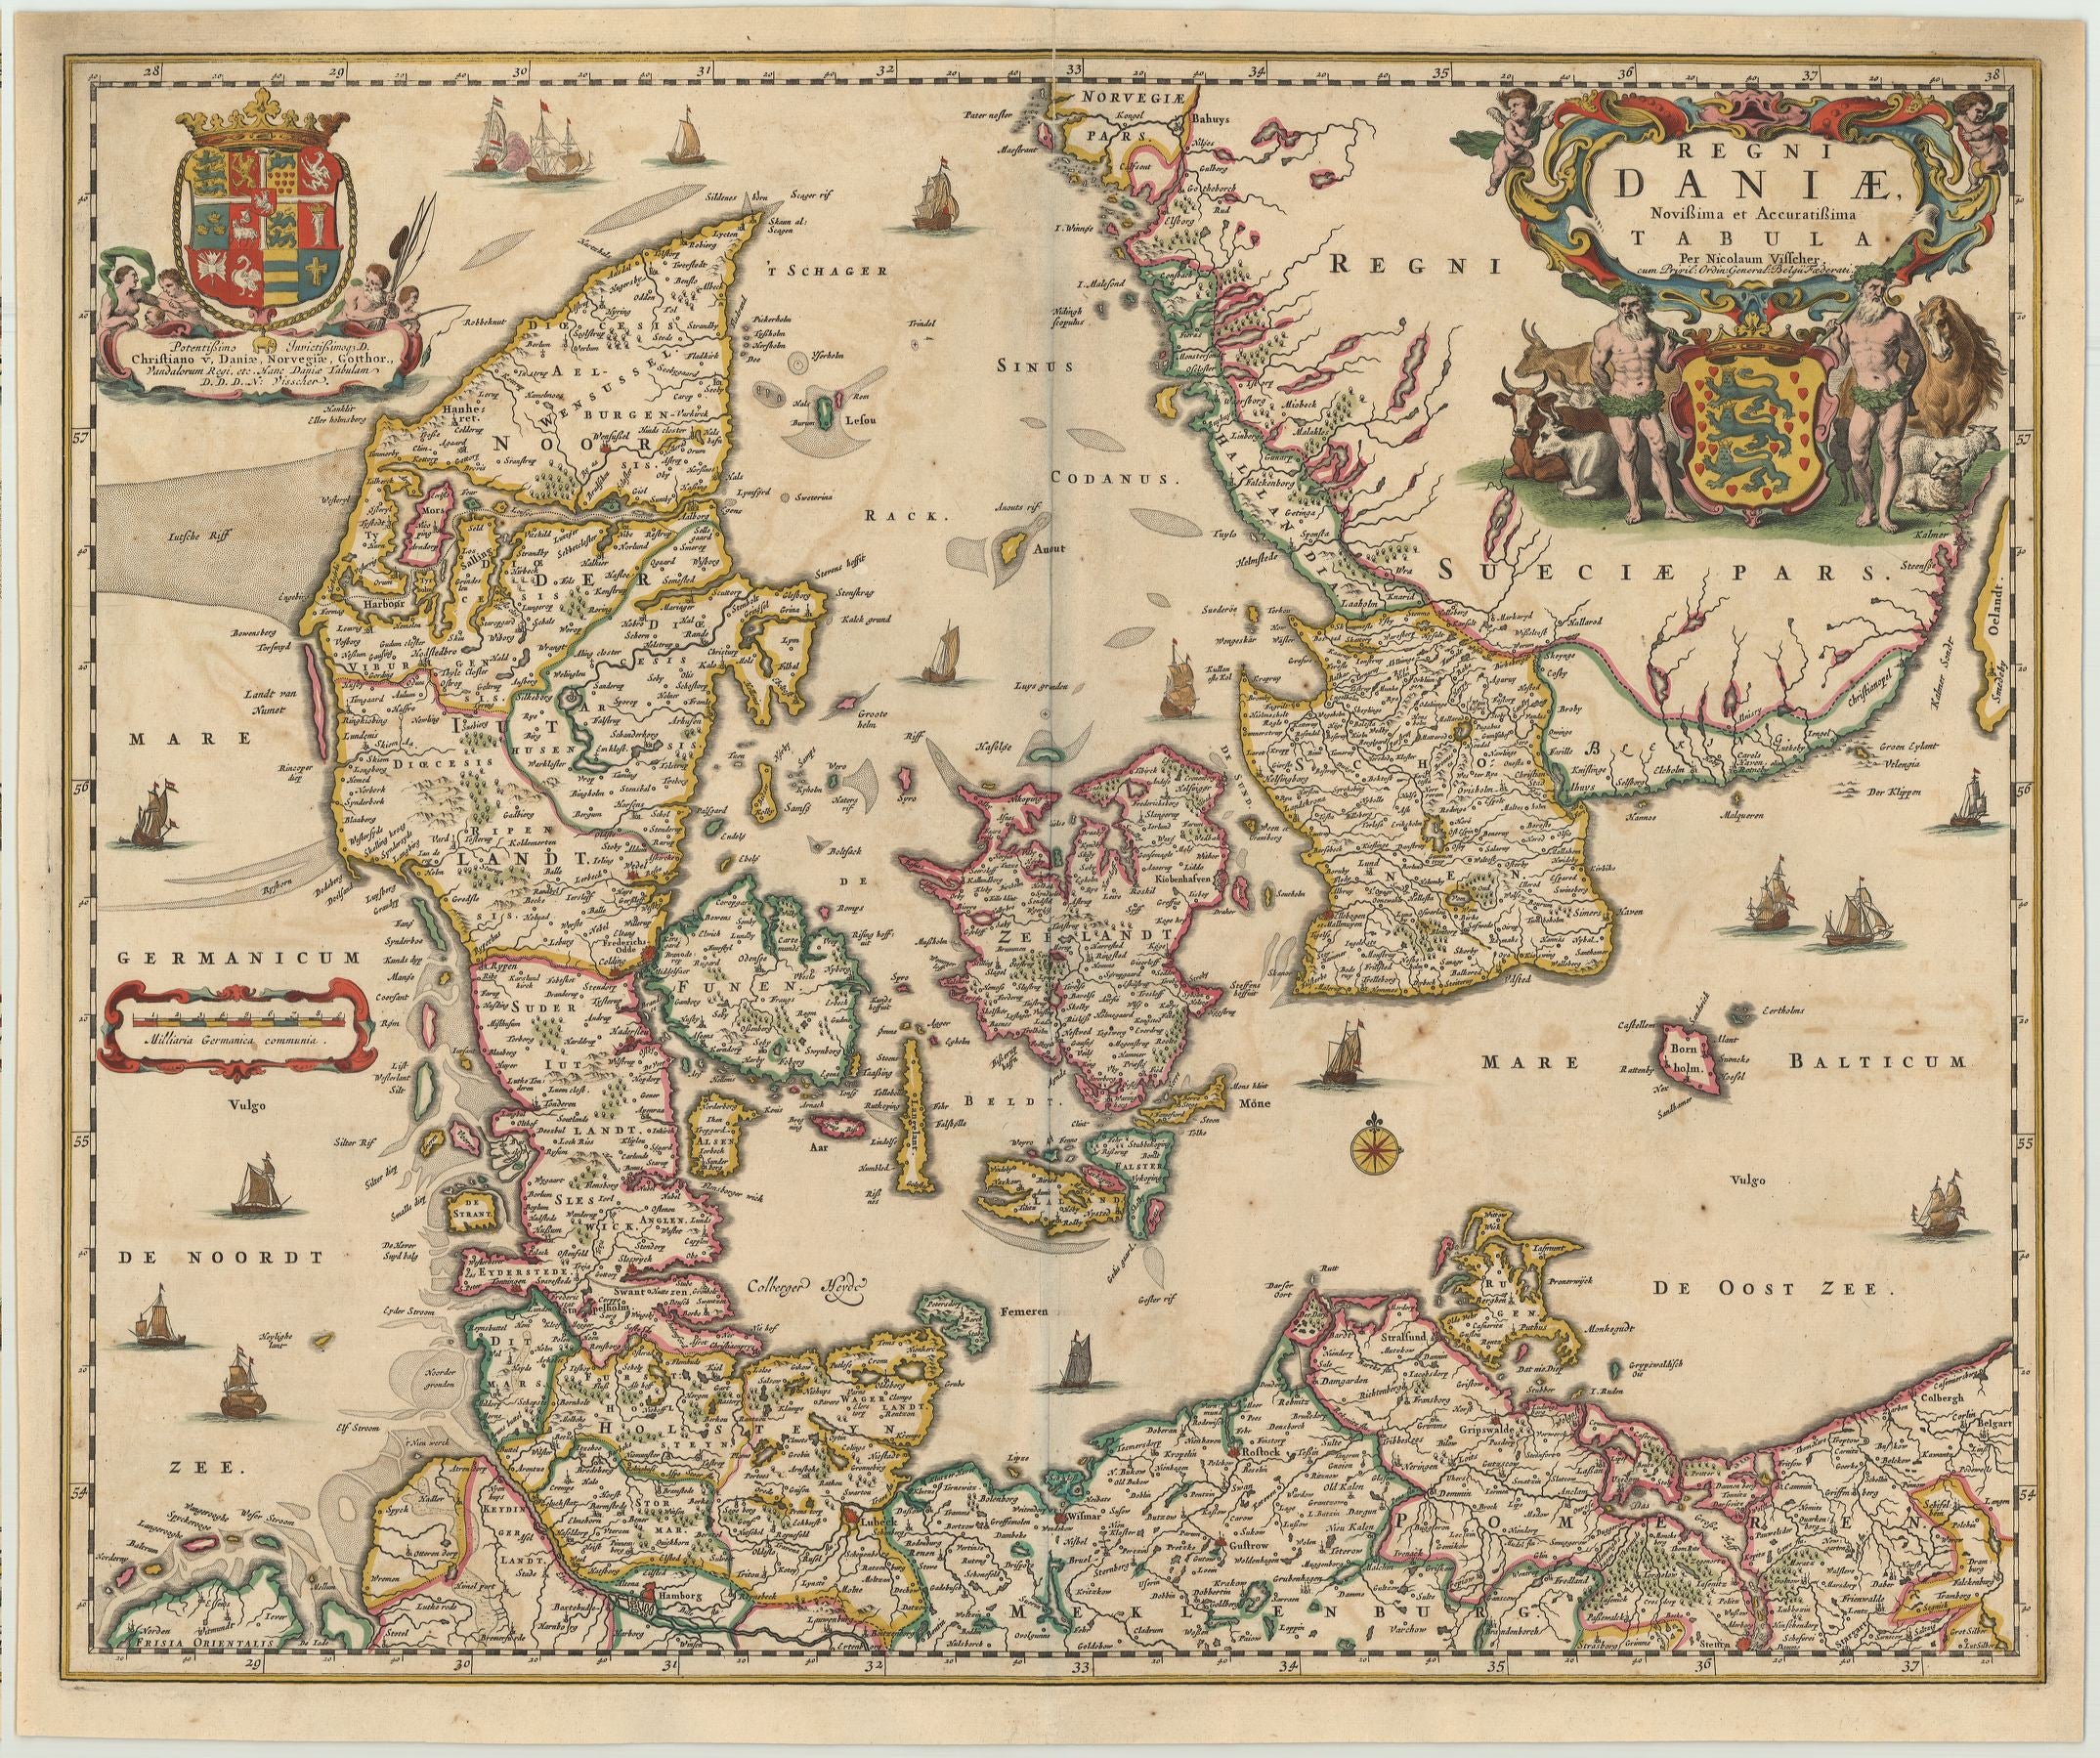 Dänemark um das Jahr 1680 von Nicolas Visscher